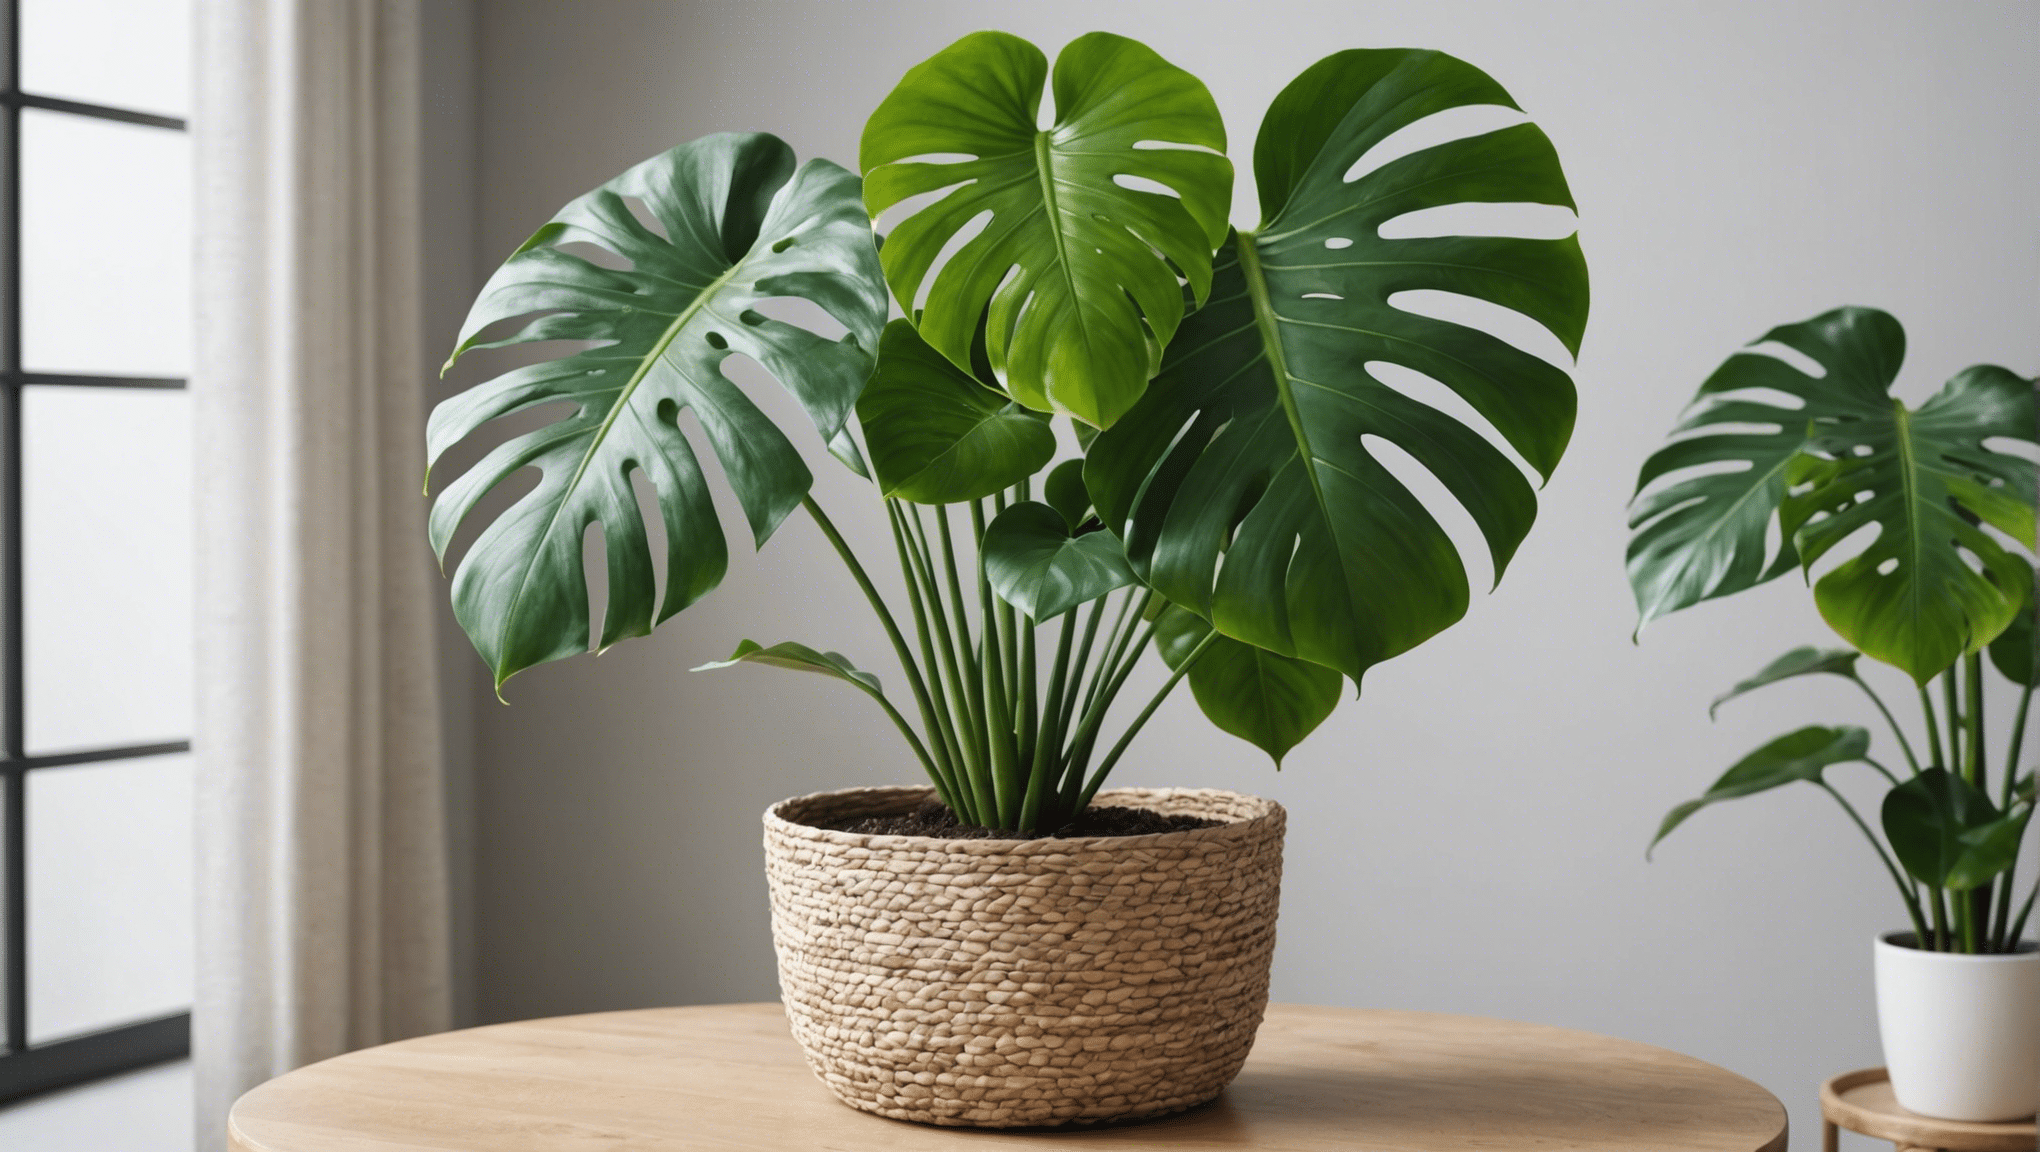 découvrez pourquoi la monstera est la plante d'intérieur tendance du moment : ses feuilles spectaculaires, sa facilité d'entretien et son pouvoir décoratif en font une incontournable pour tout amateur de plantes d'intérieur !